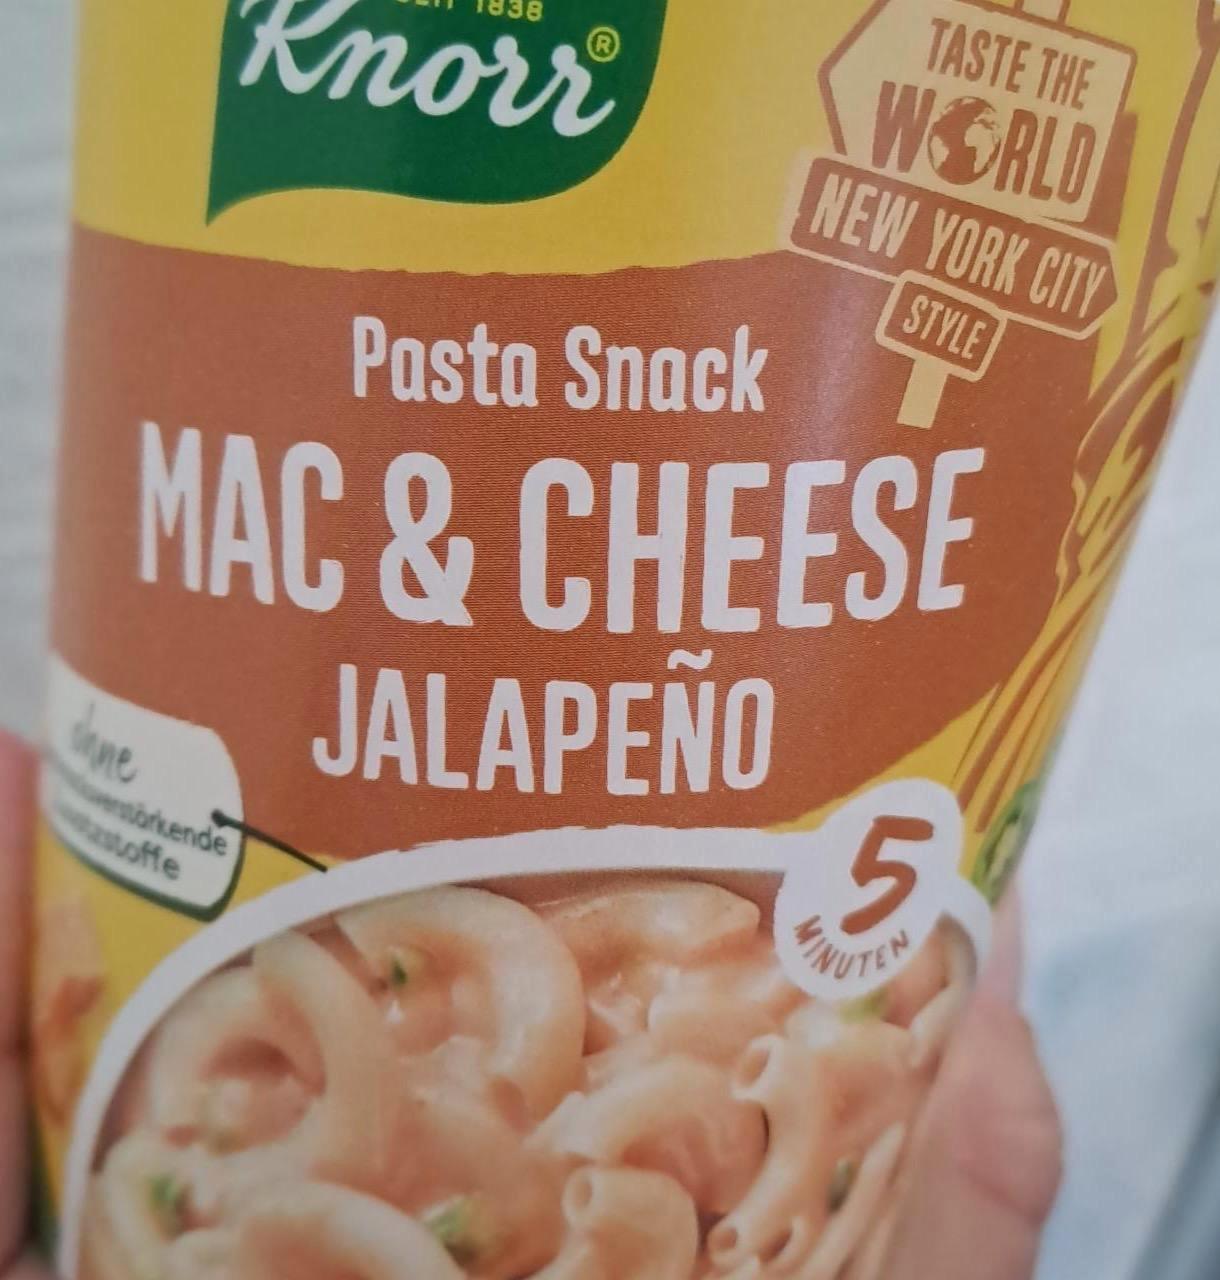 Képek - Pasta snack Mac & cheese jalapeňo Knorr